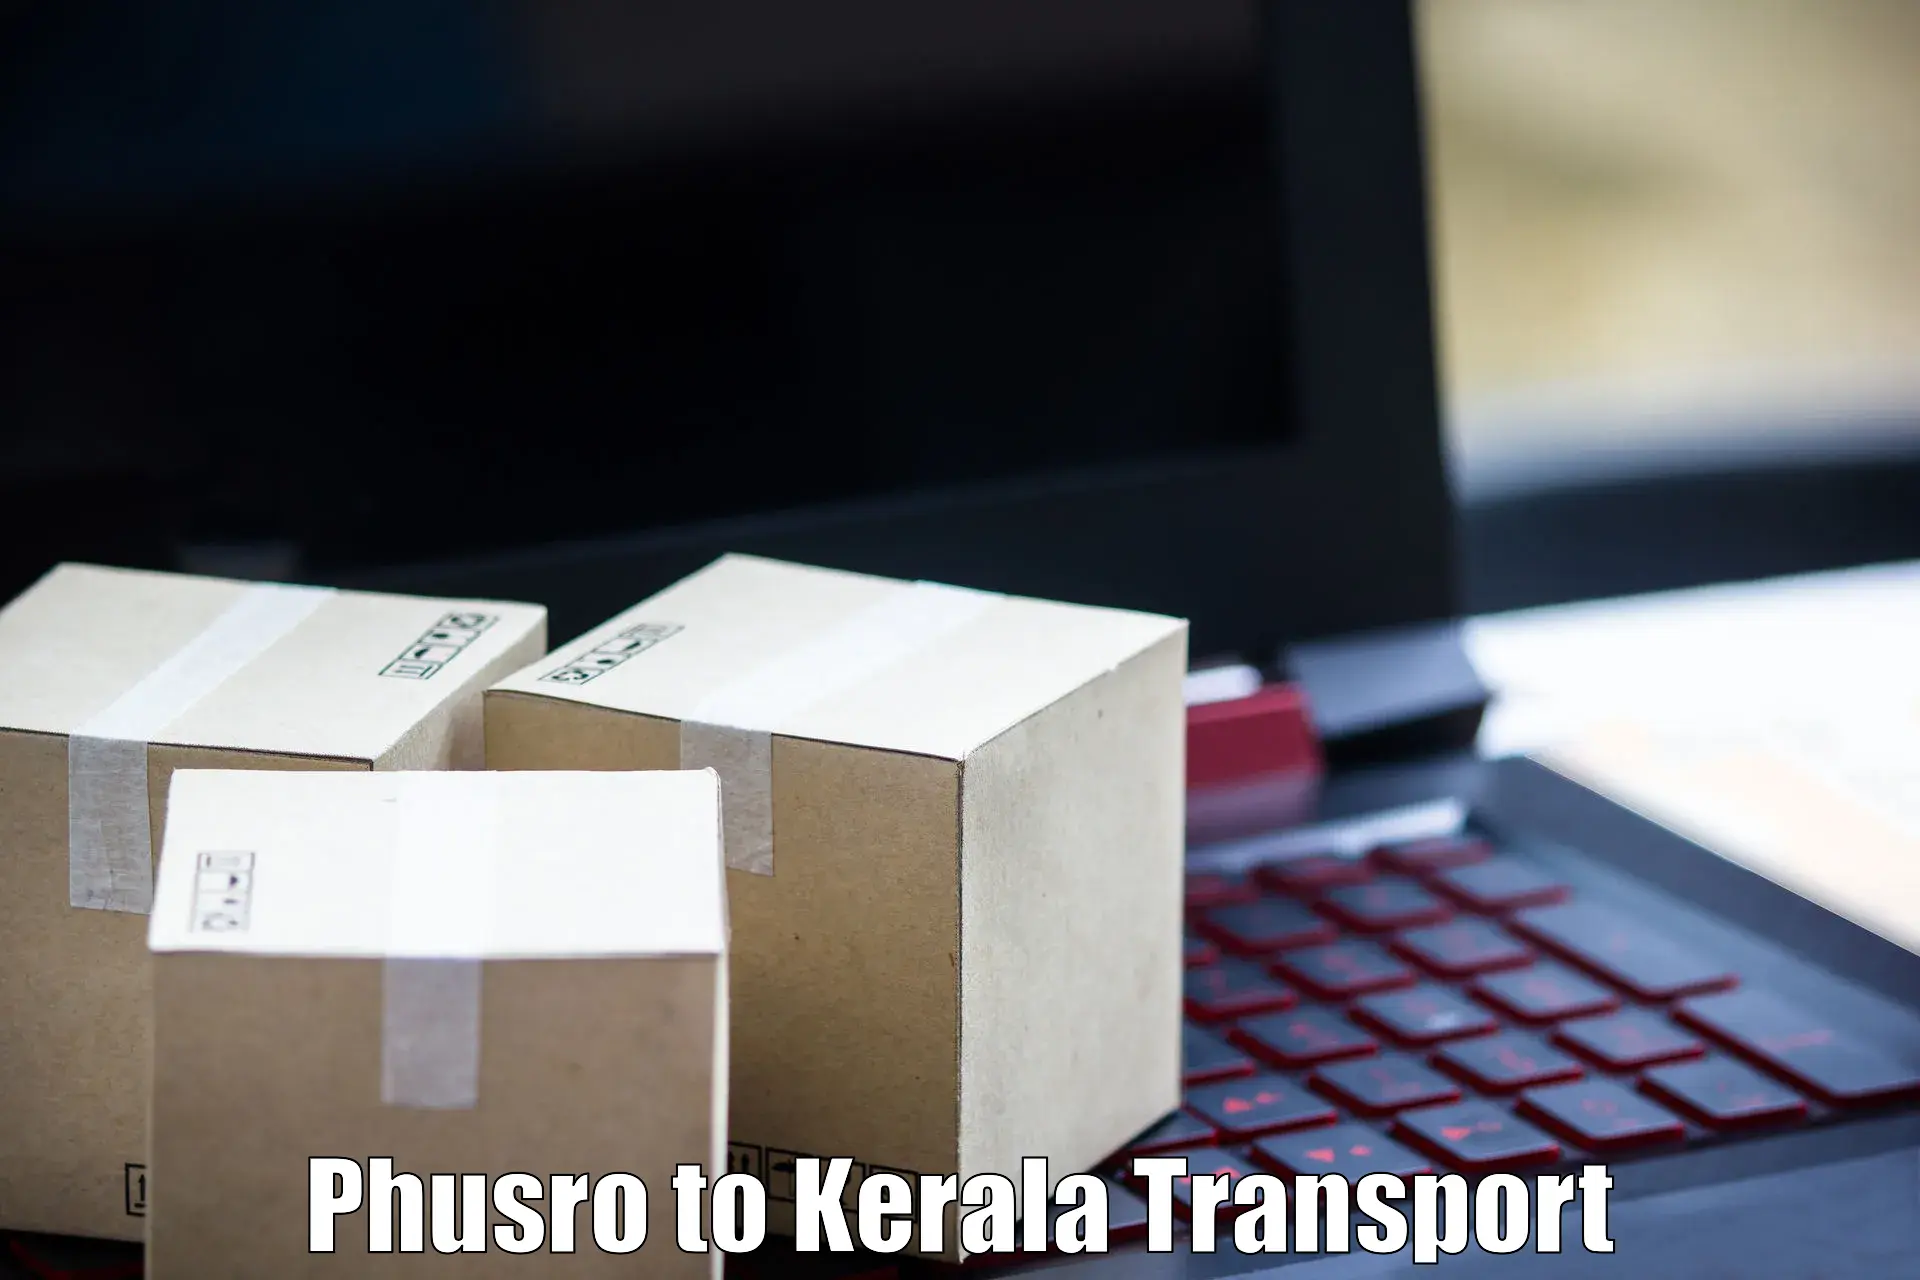 Transport in sharing in Phusro to Kayamkulam